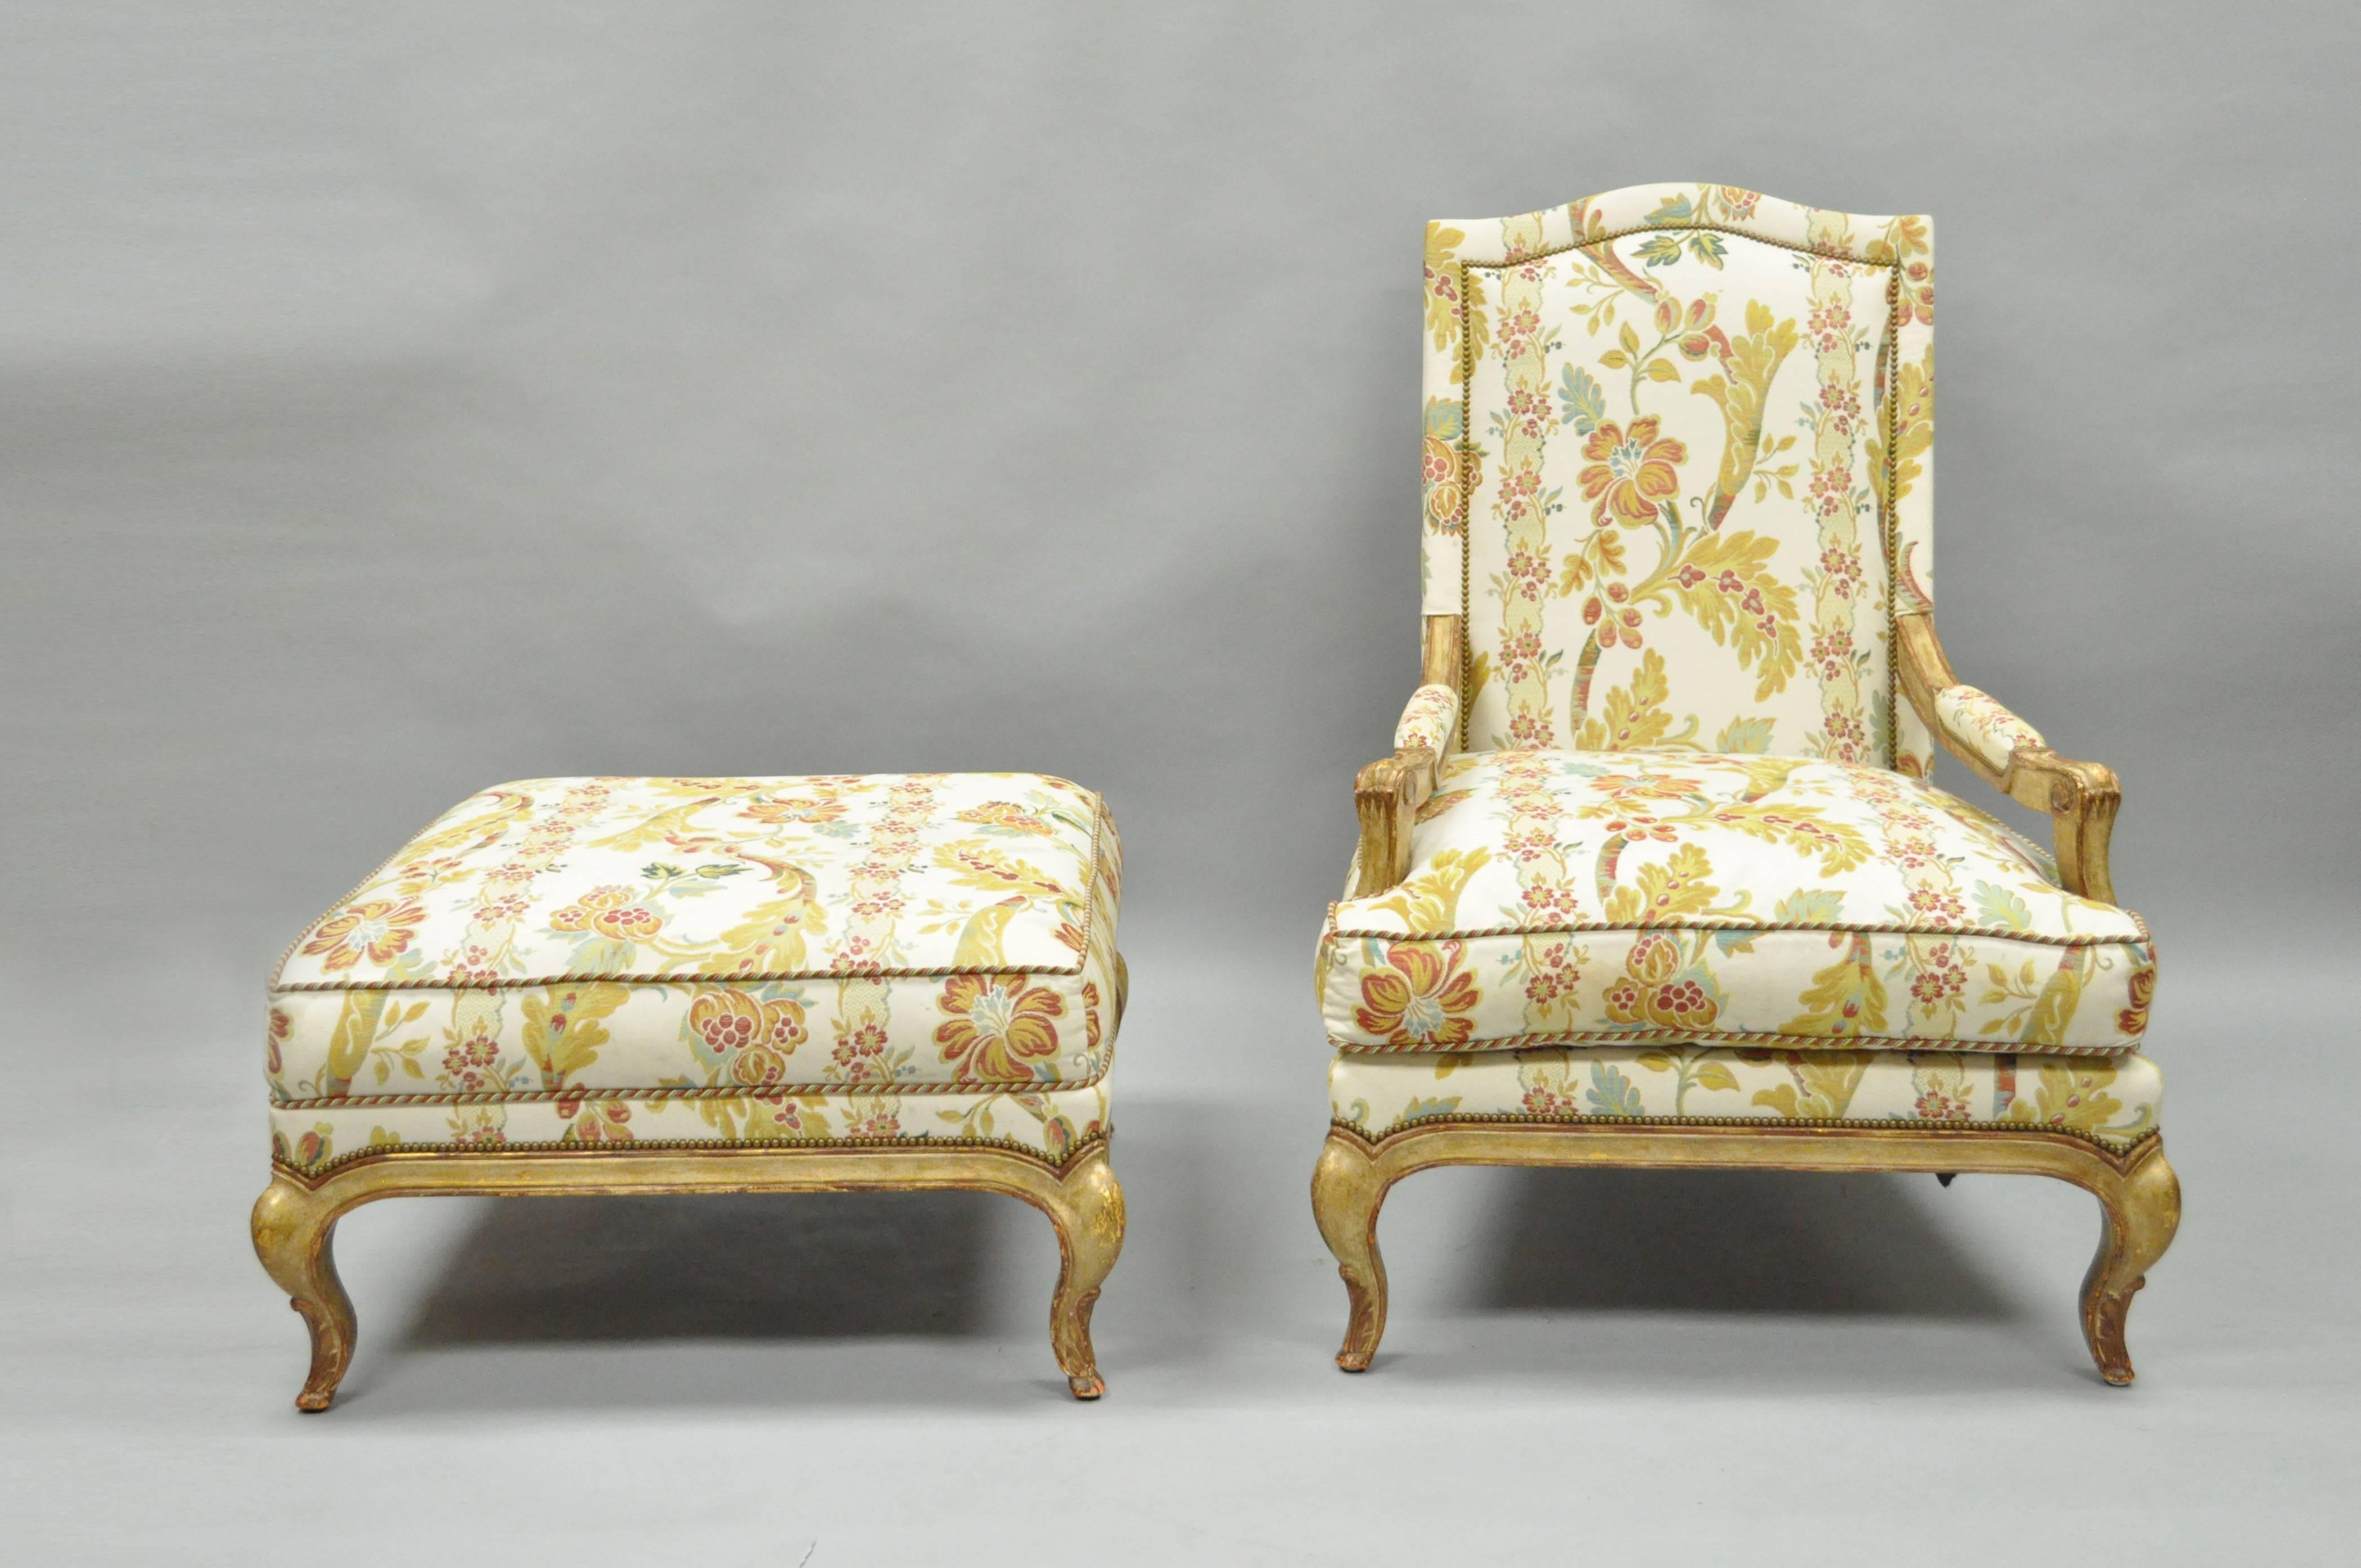 Chaise longue bergère rembourrée de haute qualité de style Louis XV et ottoman assorti par Nancy Corzine. La chaise présente une forme majestueuse avec un cadre en bois massif légèrement sculpté, des pieds cabrioles galbés et un magnifique